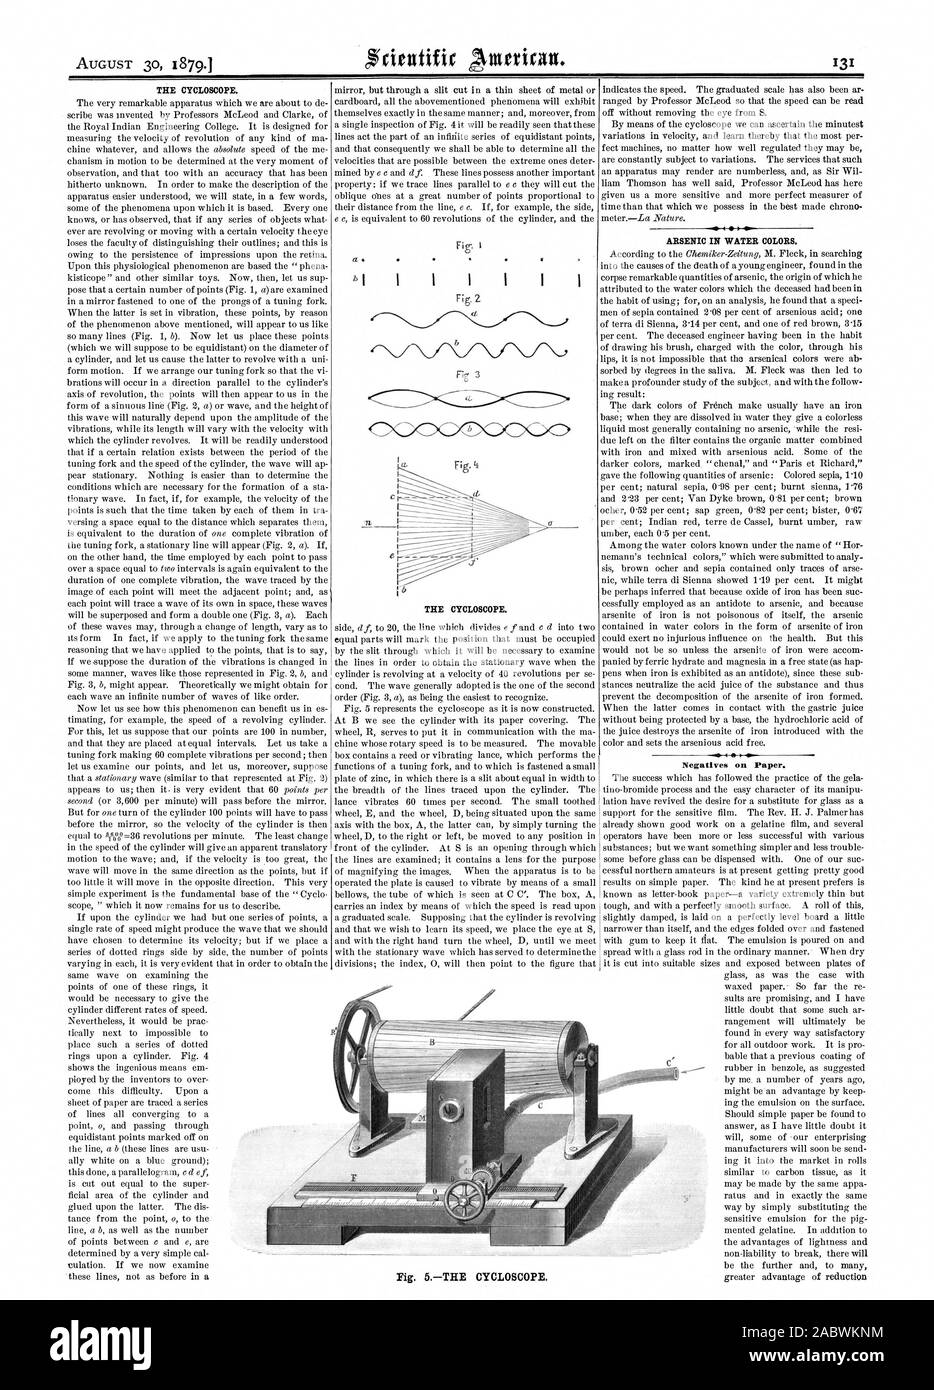 Il CYCLOSCOPE. Il CYCLOSCOPE. Arsenico in acqua i colori. Negativi su carta. Fig. 5L'CYCLOSCOPE., Scientific American, 1879-08-30 Foto Stock